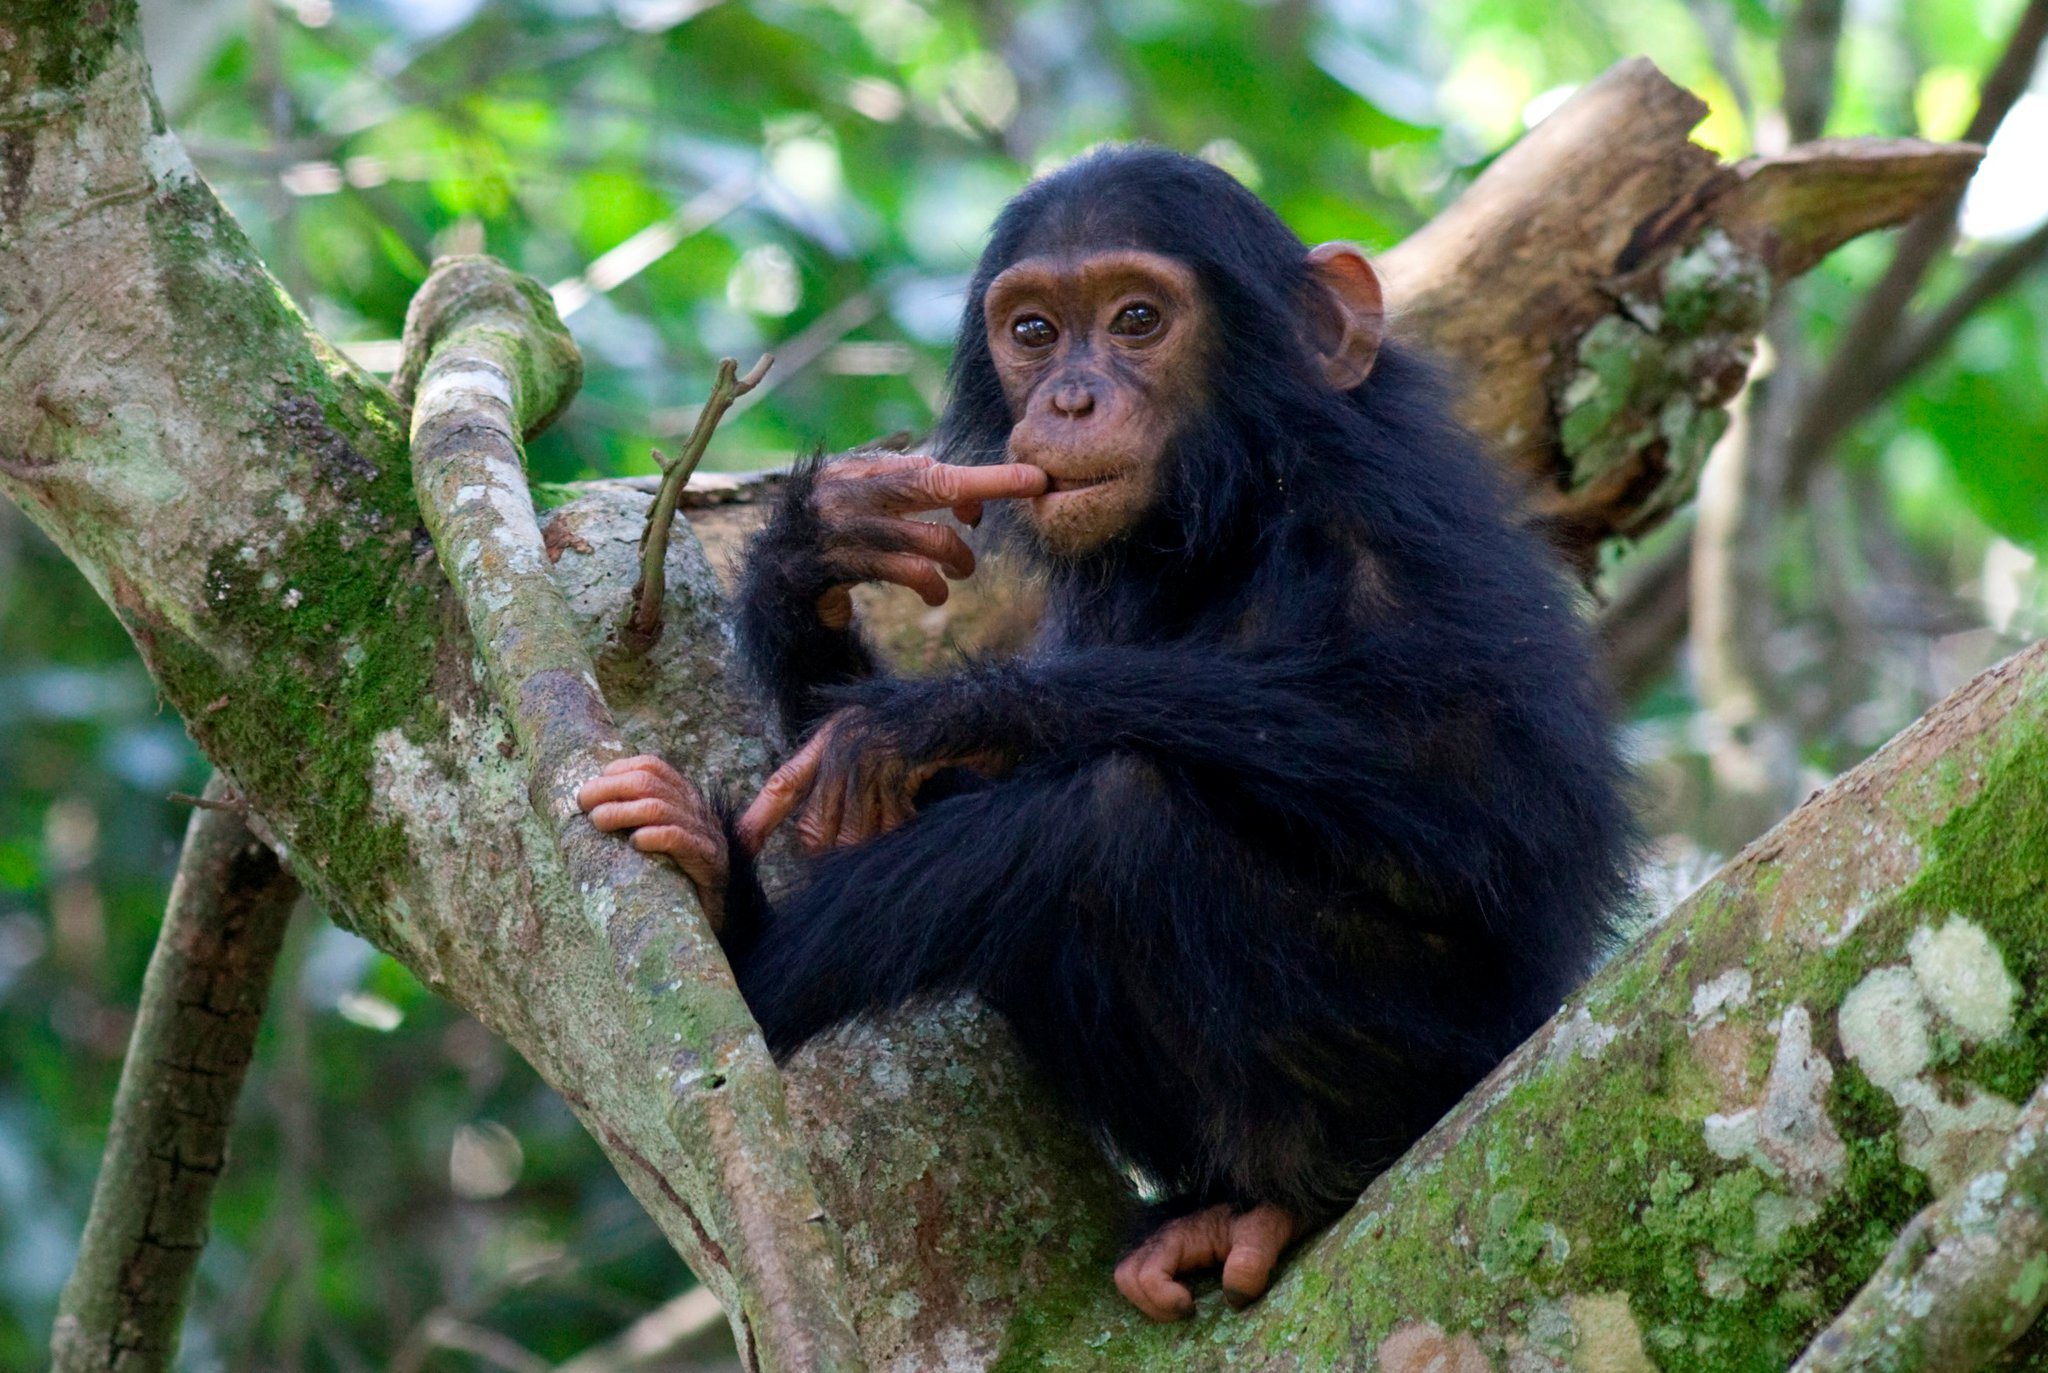 A chimp in Uganda